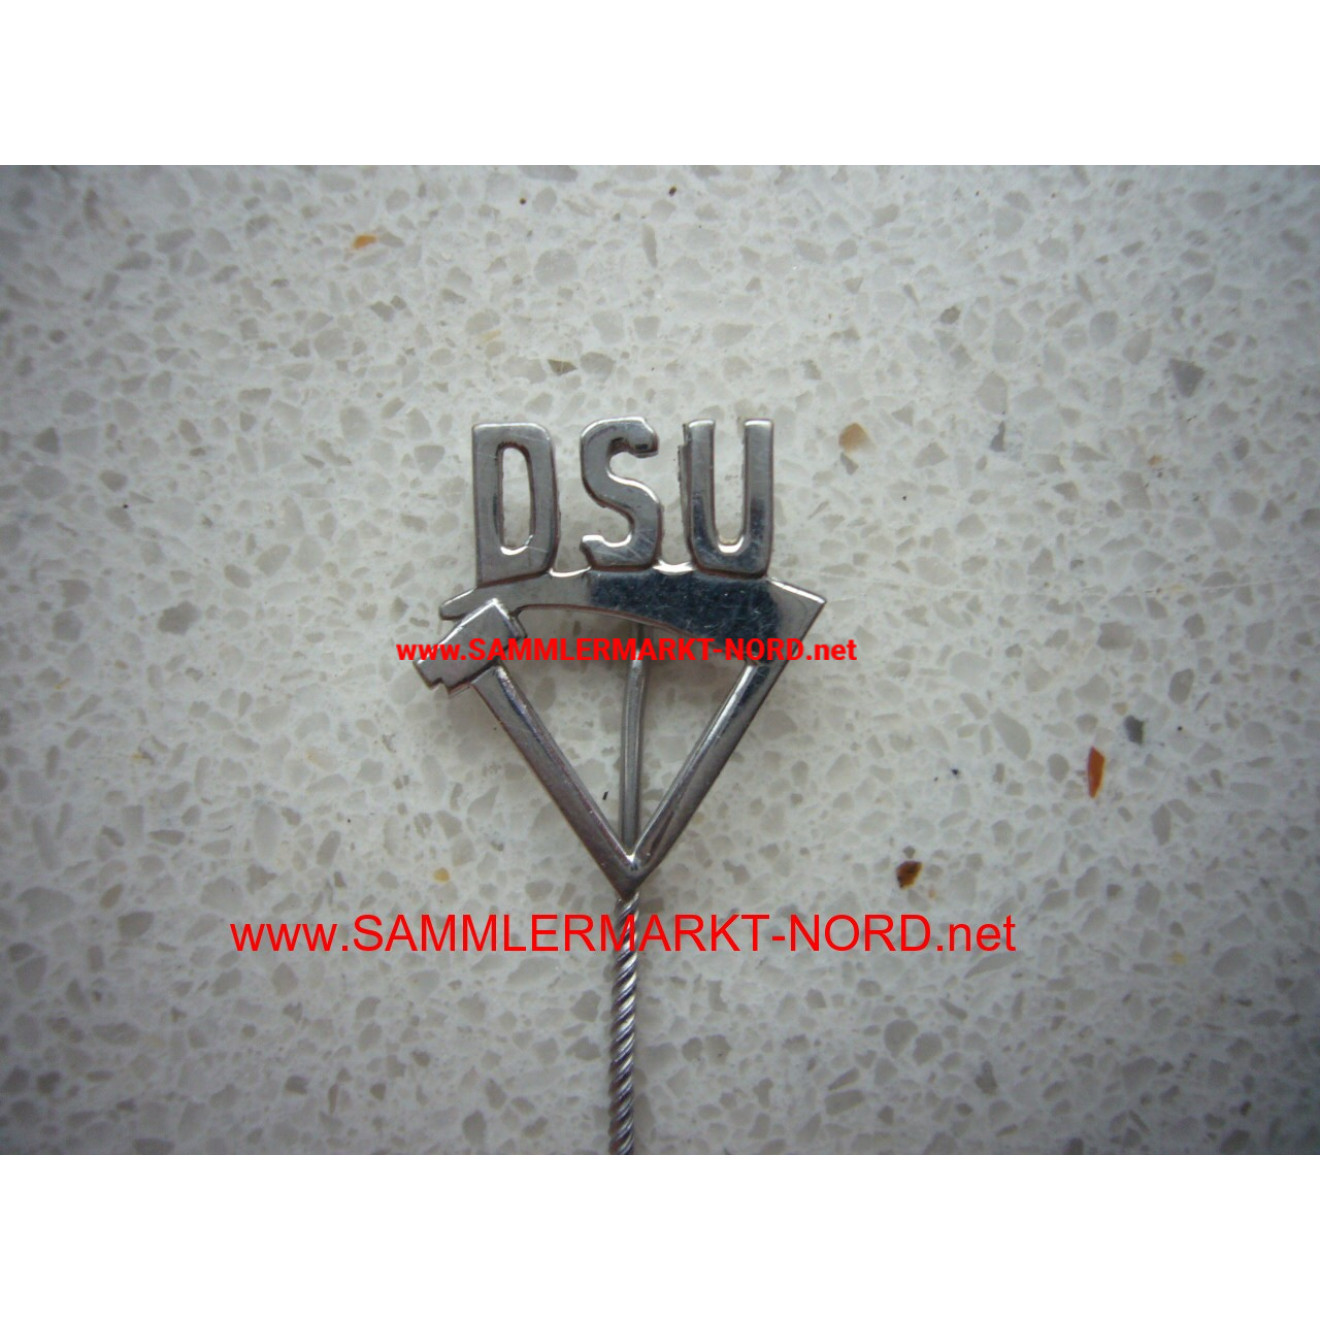 DSU German Social Union - Member Badge